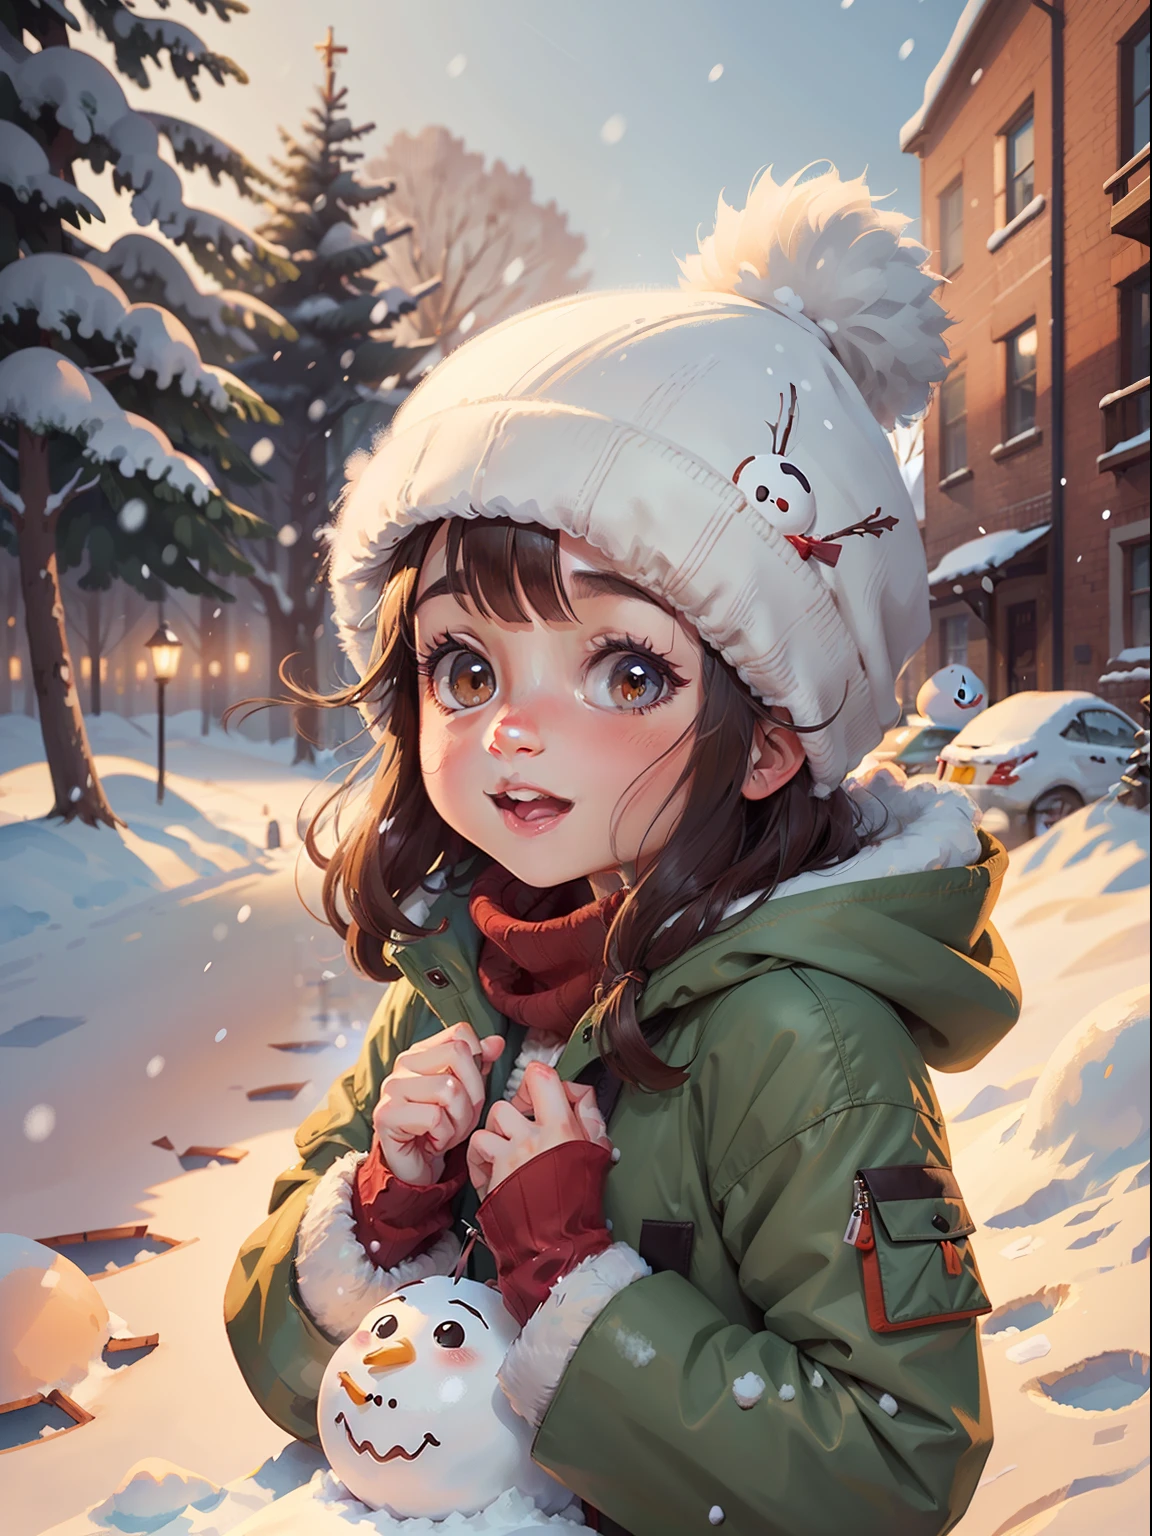 女孩穿着冬衣 ,冬季场景, 雪, 完美的光影, 高调风格, 低饱和度, 超级细节, 快乐的 , 球头, 圣诞氛围, 雪man, 插画风格, 水彩风格, 更多细节, 没有花, 更多背景